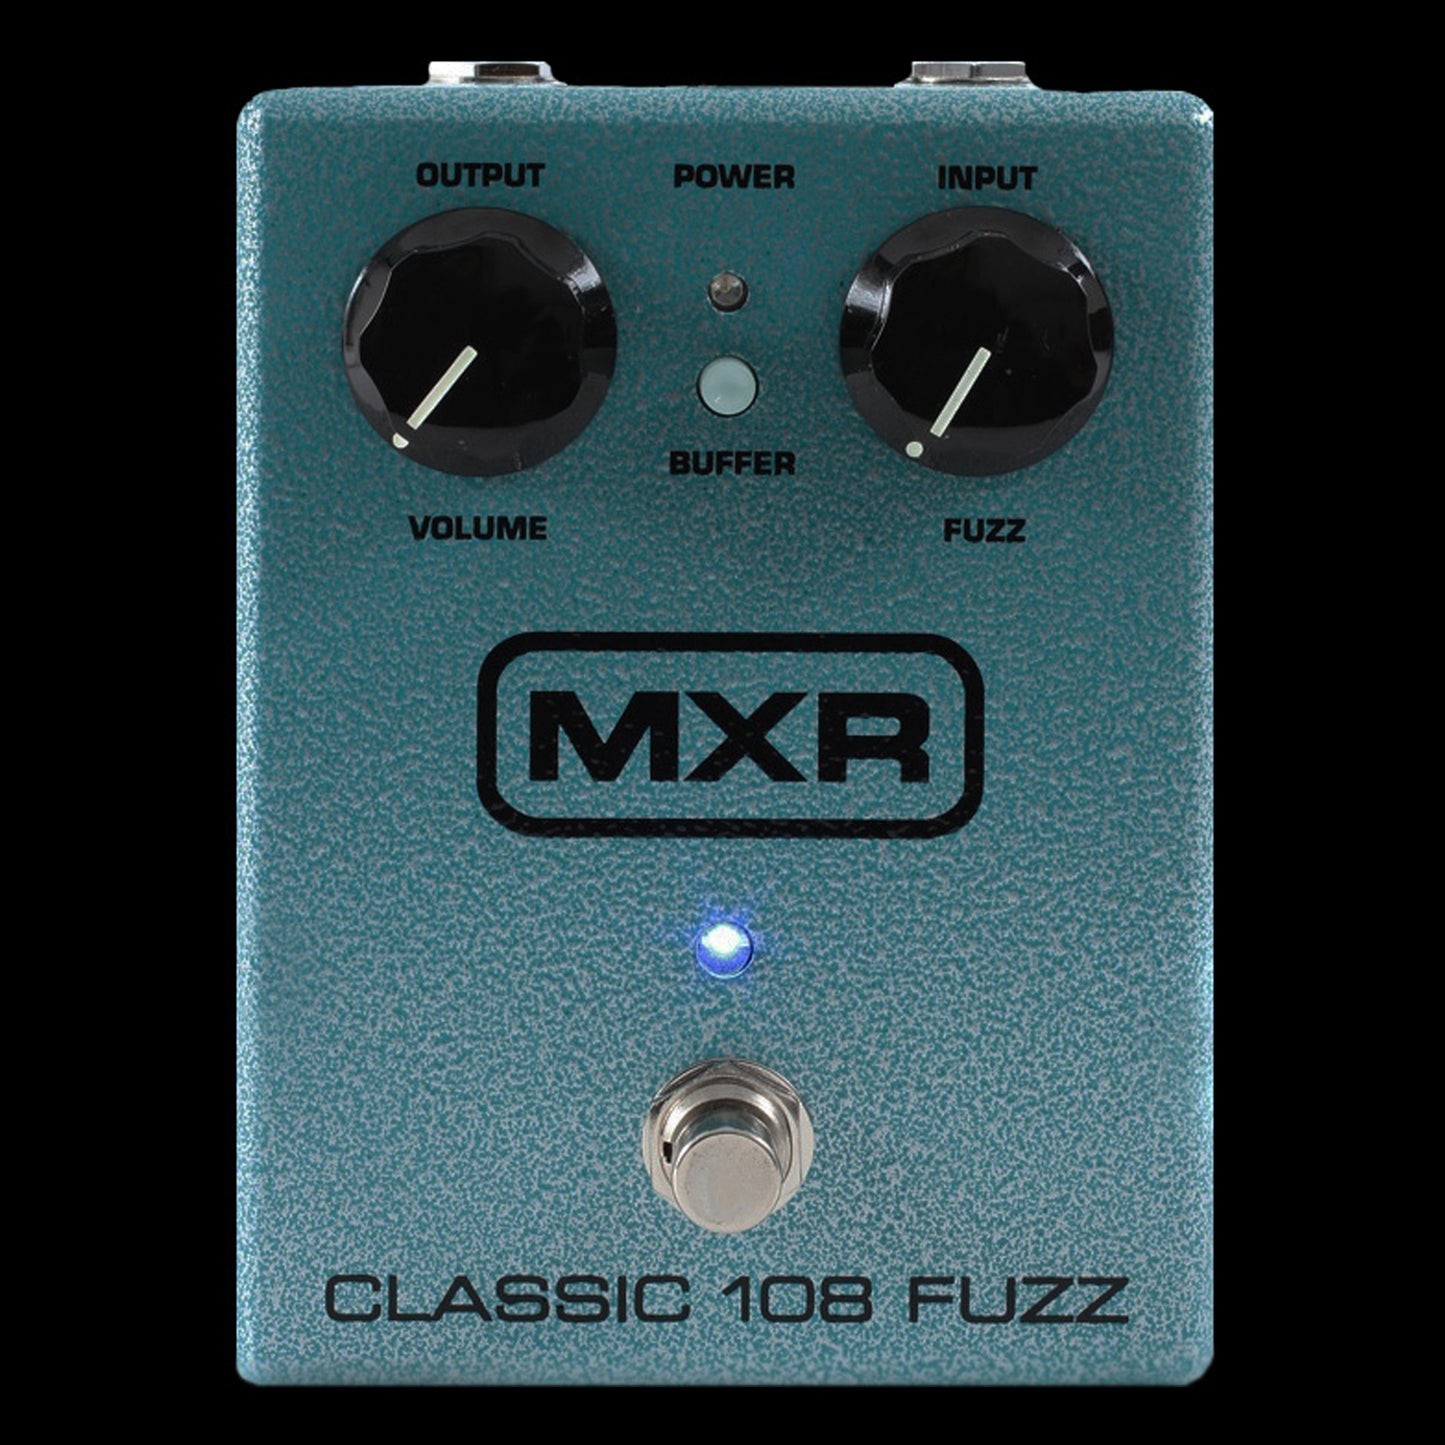 MXR Classic 108 Fuzz M173 Pedal